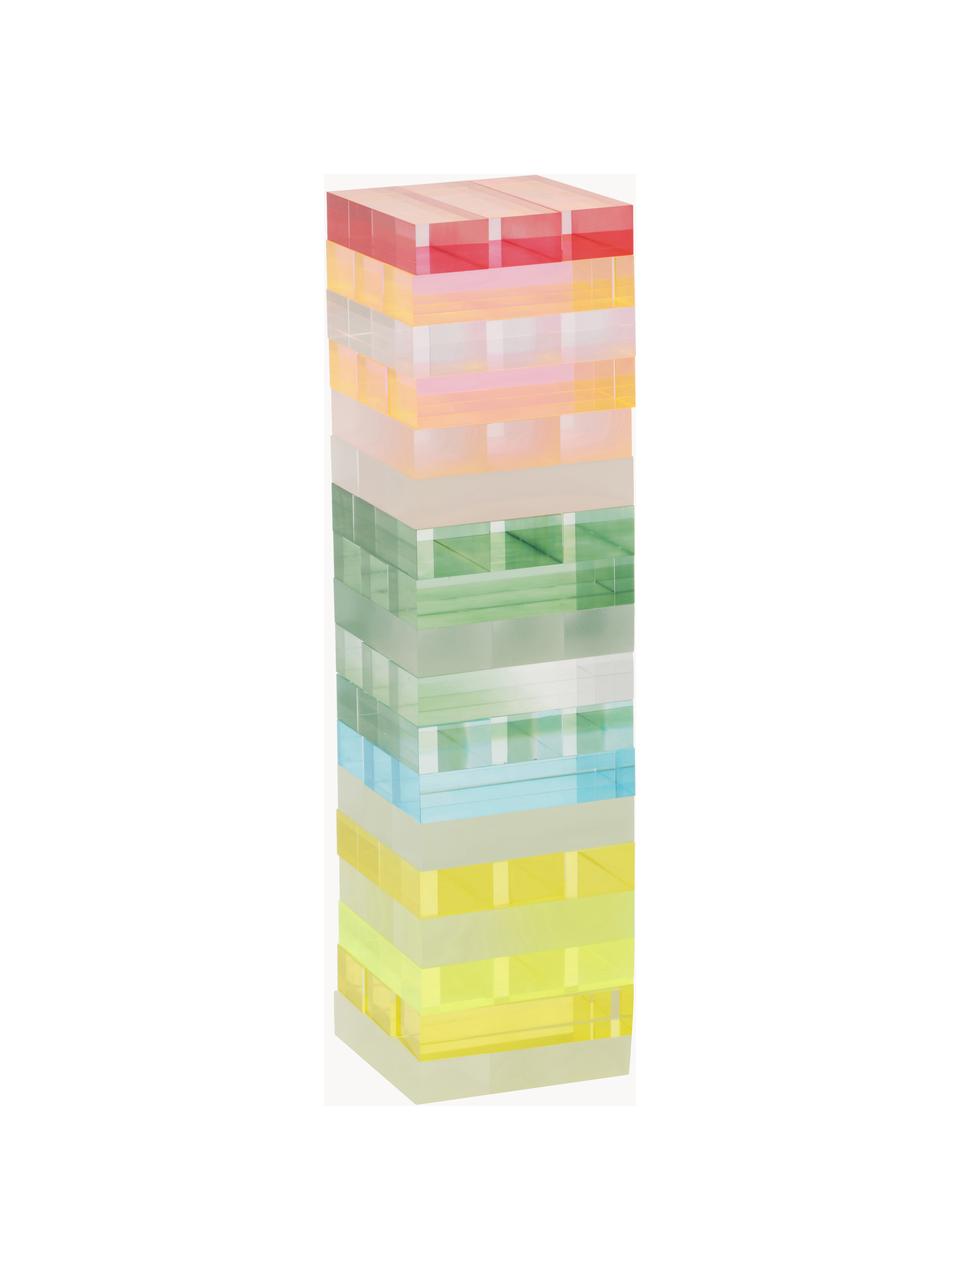 Tour à bascule Sherbert, Plastique, Multicolore, transparent, larg. 8 x haut. 28 cm